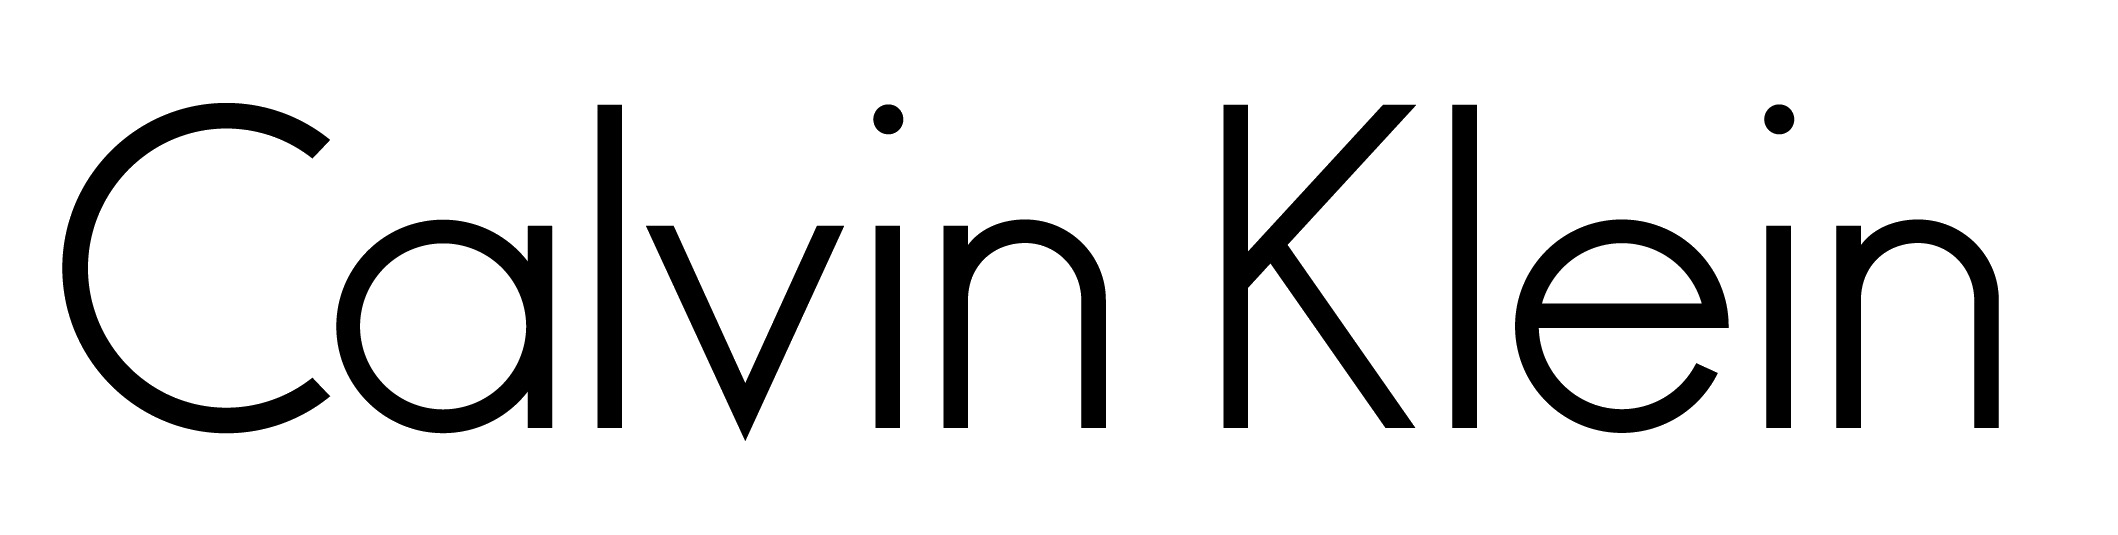 Calvin Klein Logo - Calvin Klein Logo transparent PNG - StickPNG